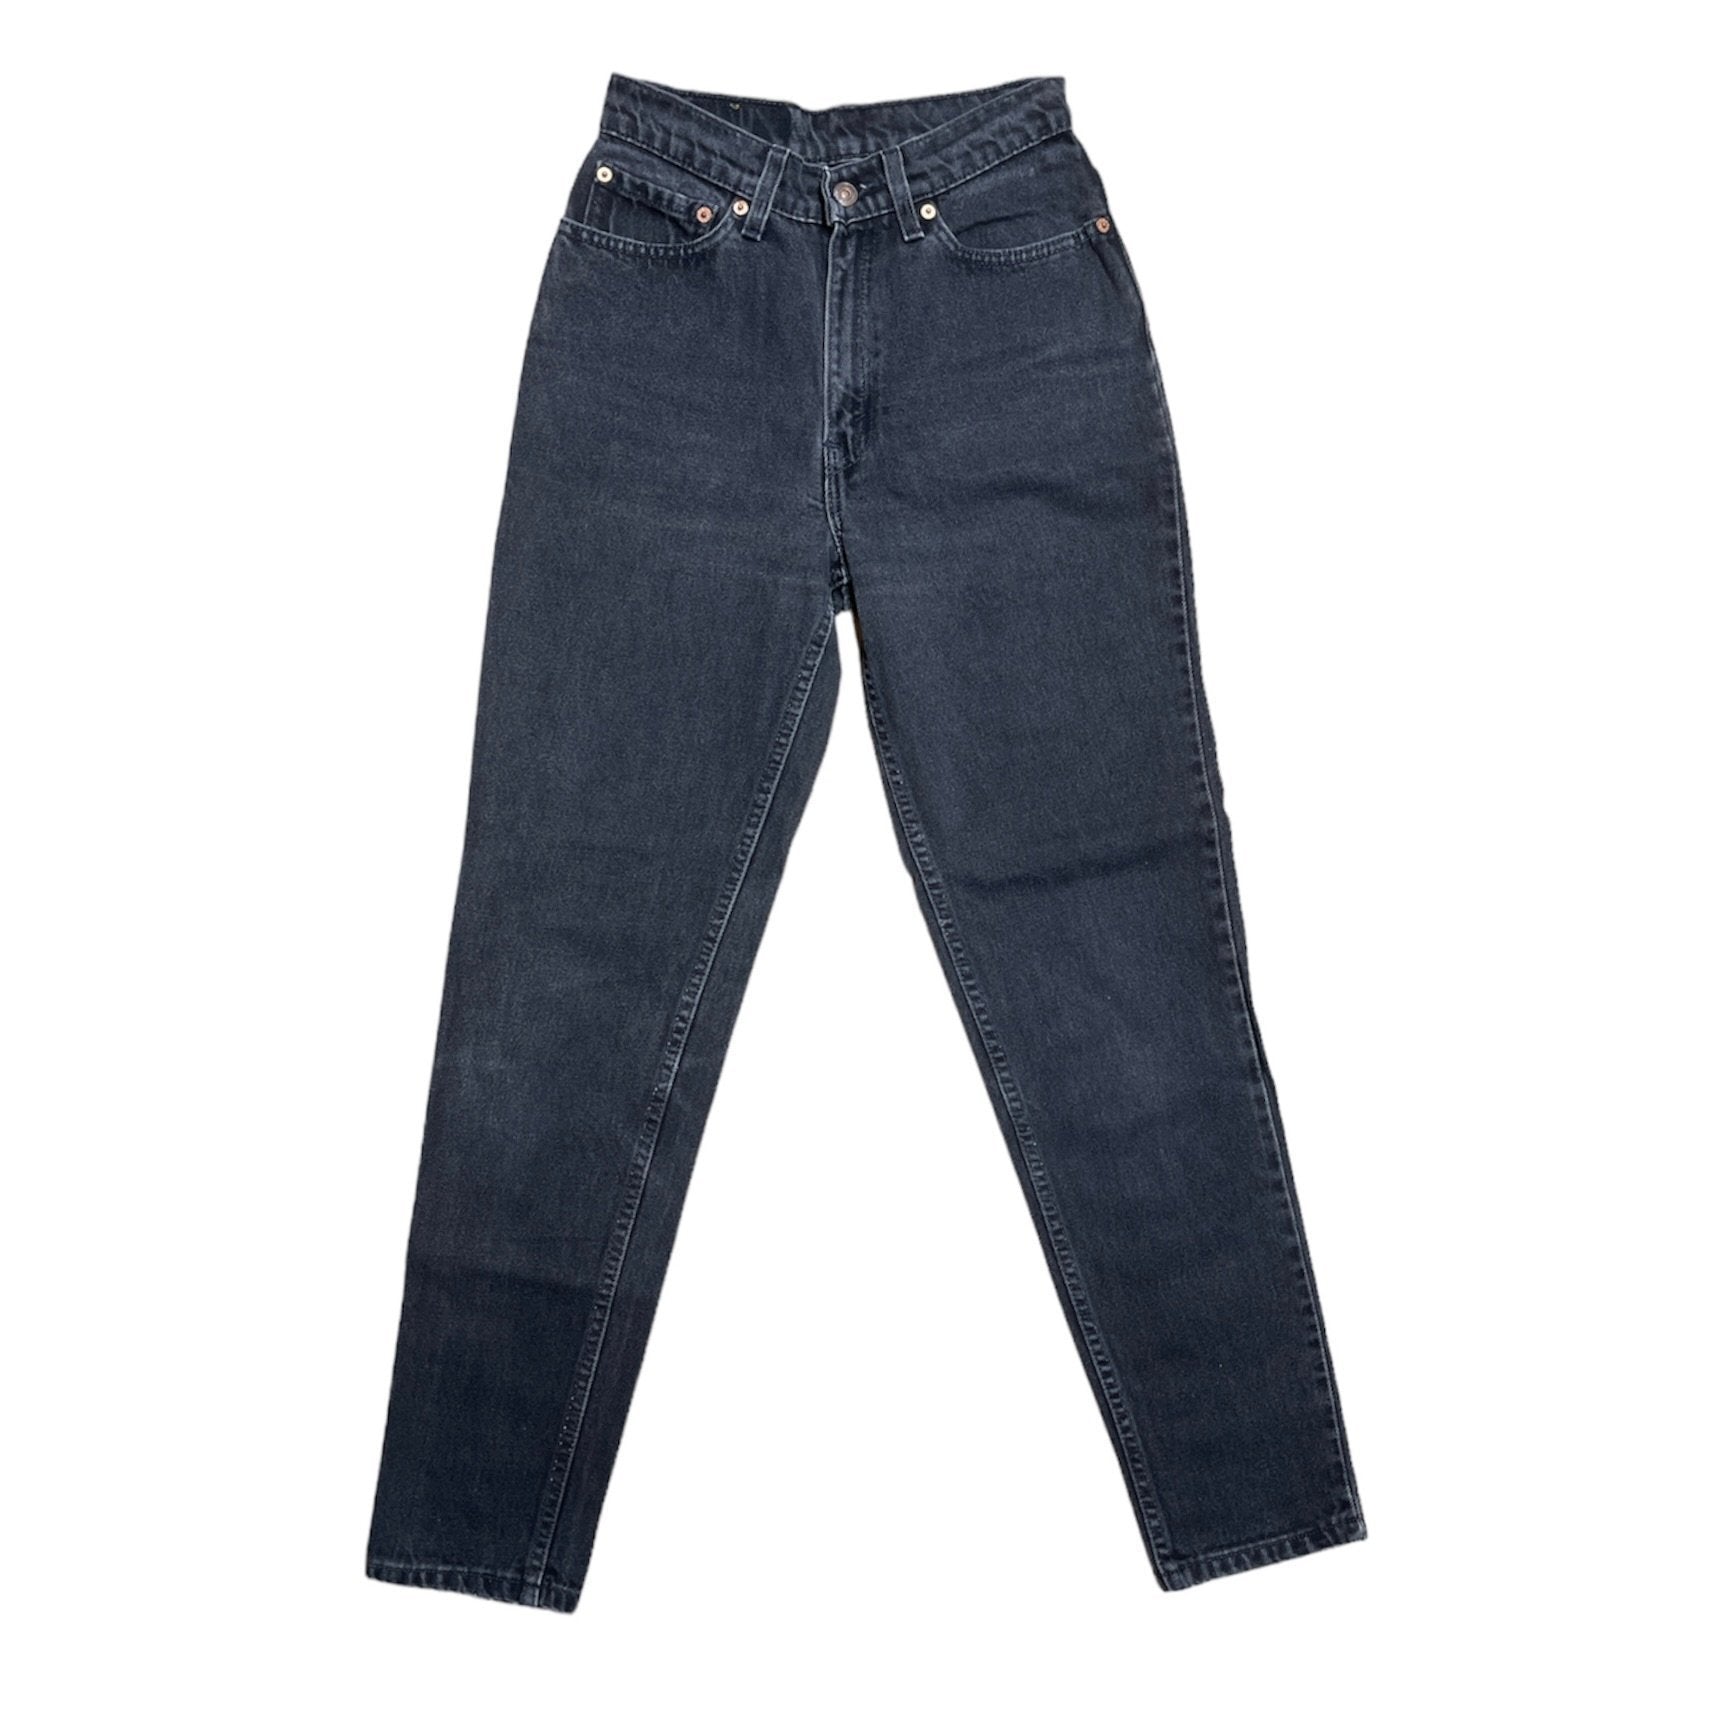 Vintage Levis 512 Grey/Black Jeans (W26/L30)